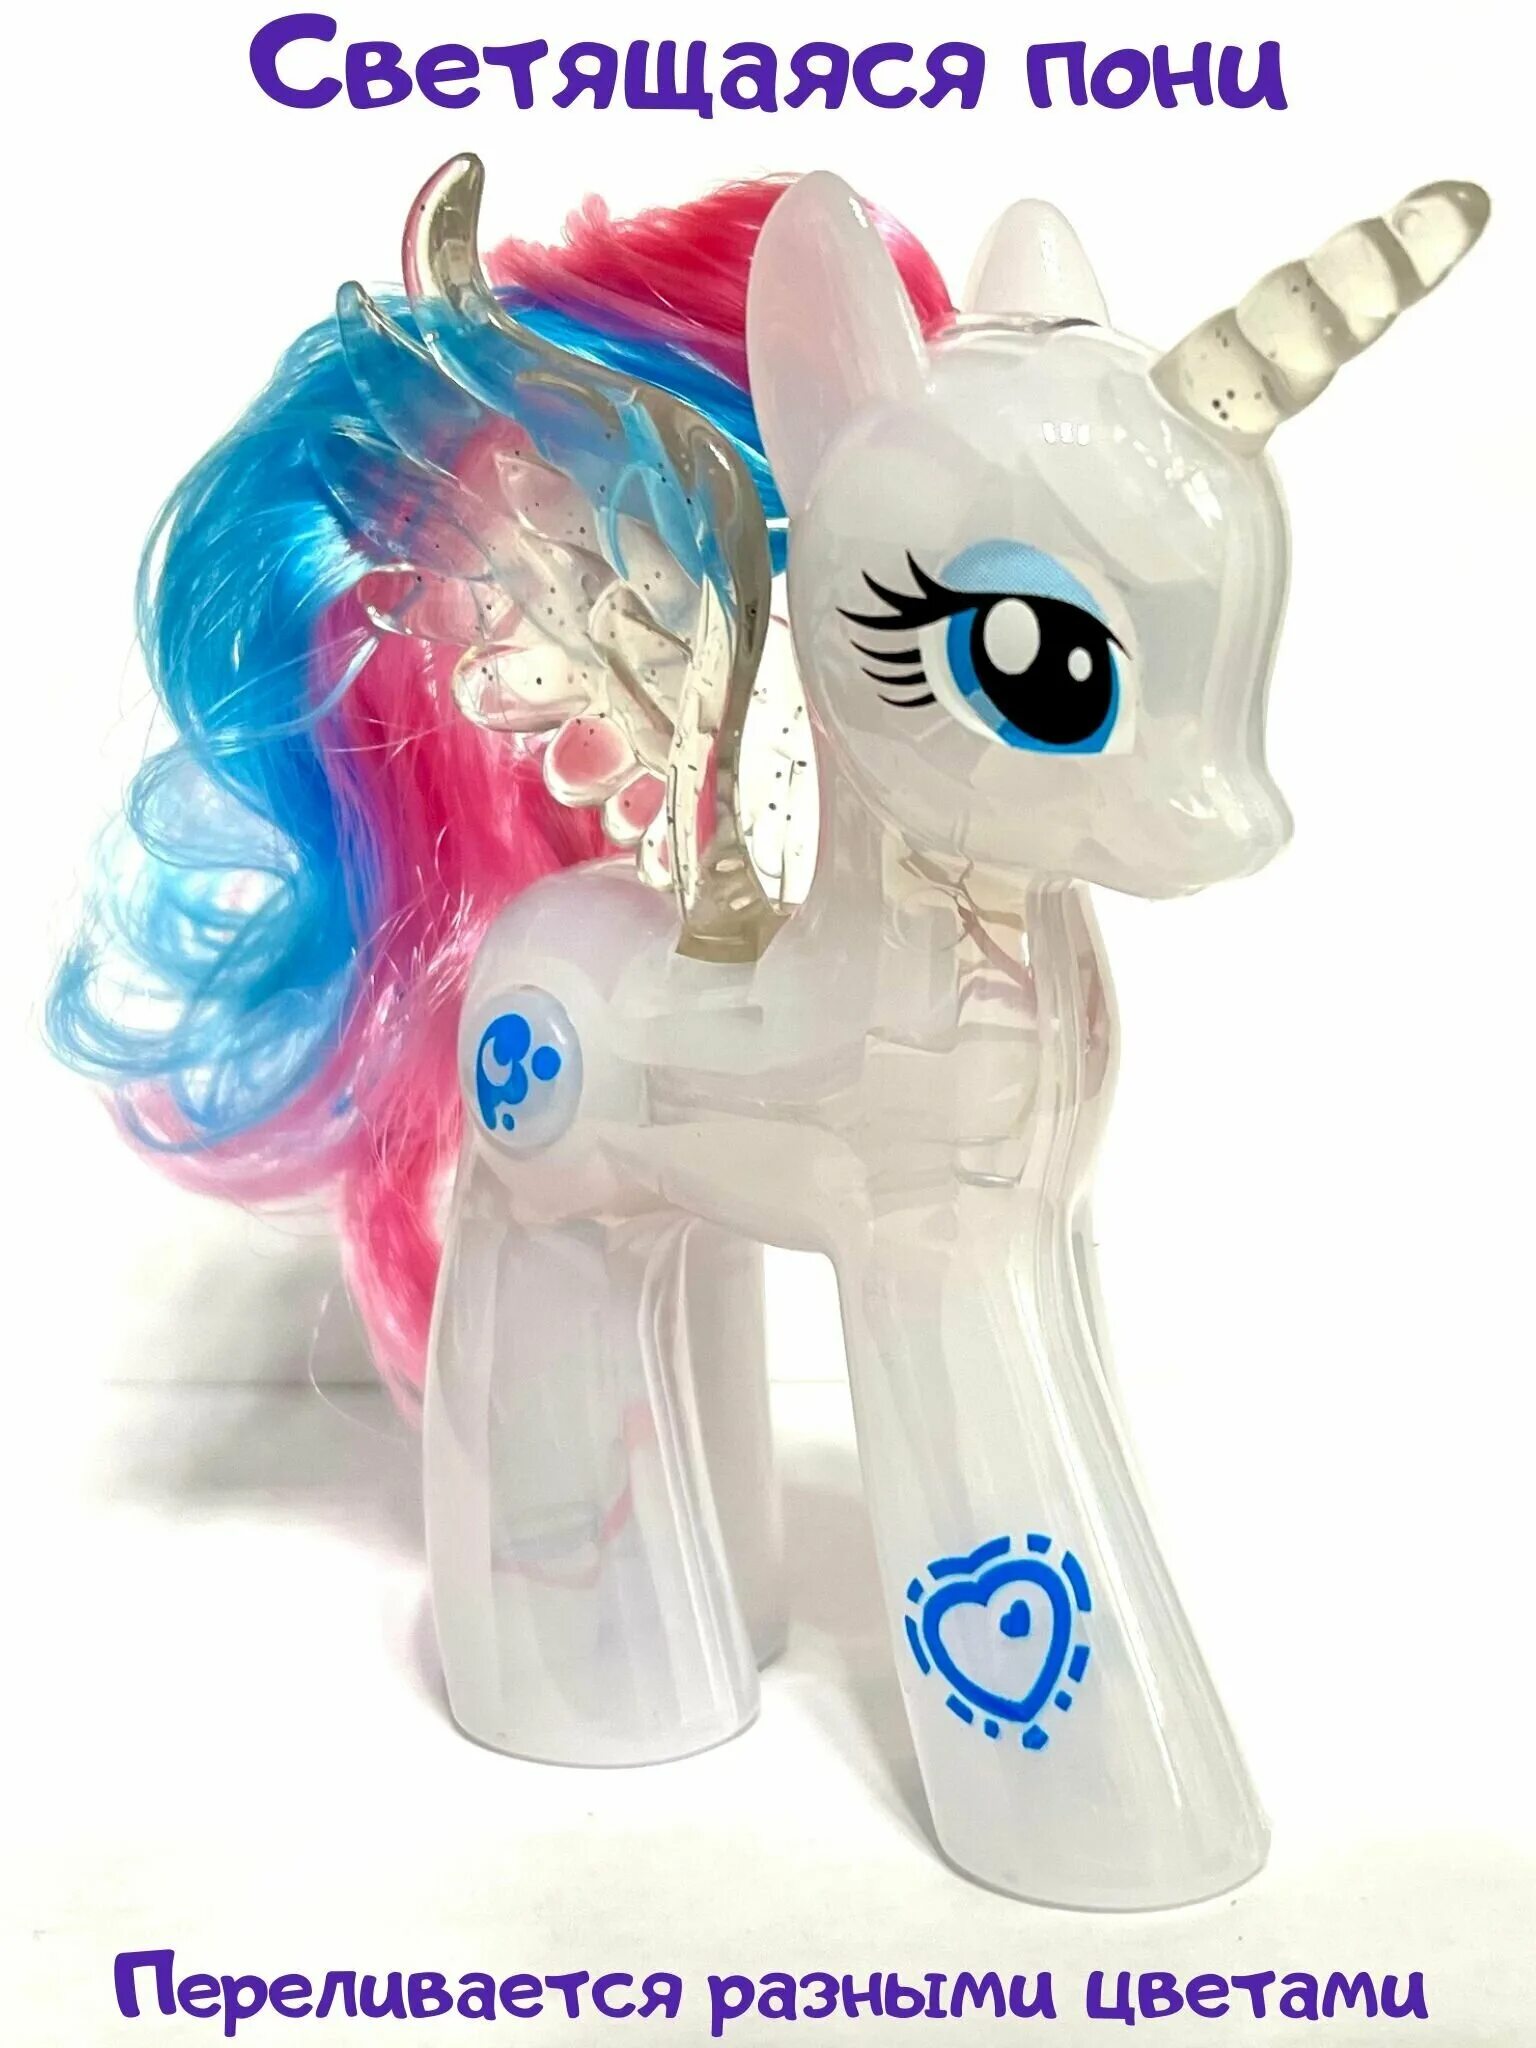 Светящихся пони. Светящаяся пони игрушка. Мягкая игрушка принцесса Селестия. Брелки светящиеся лошадки. Кто светится в пони.